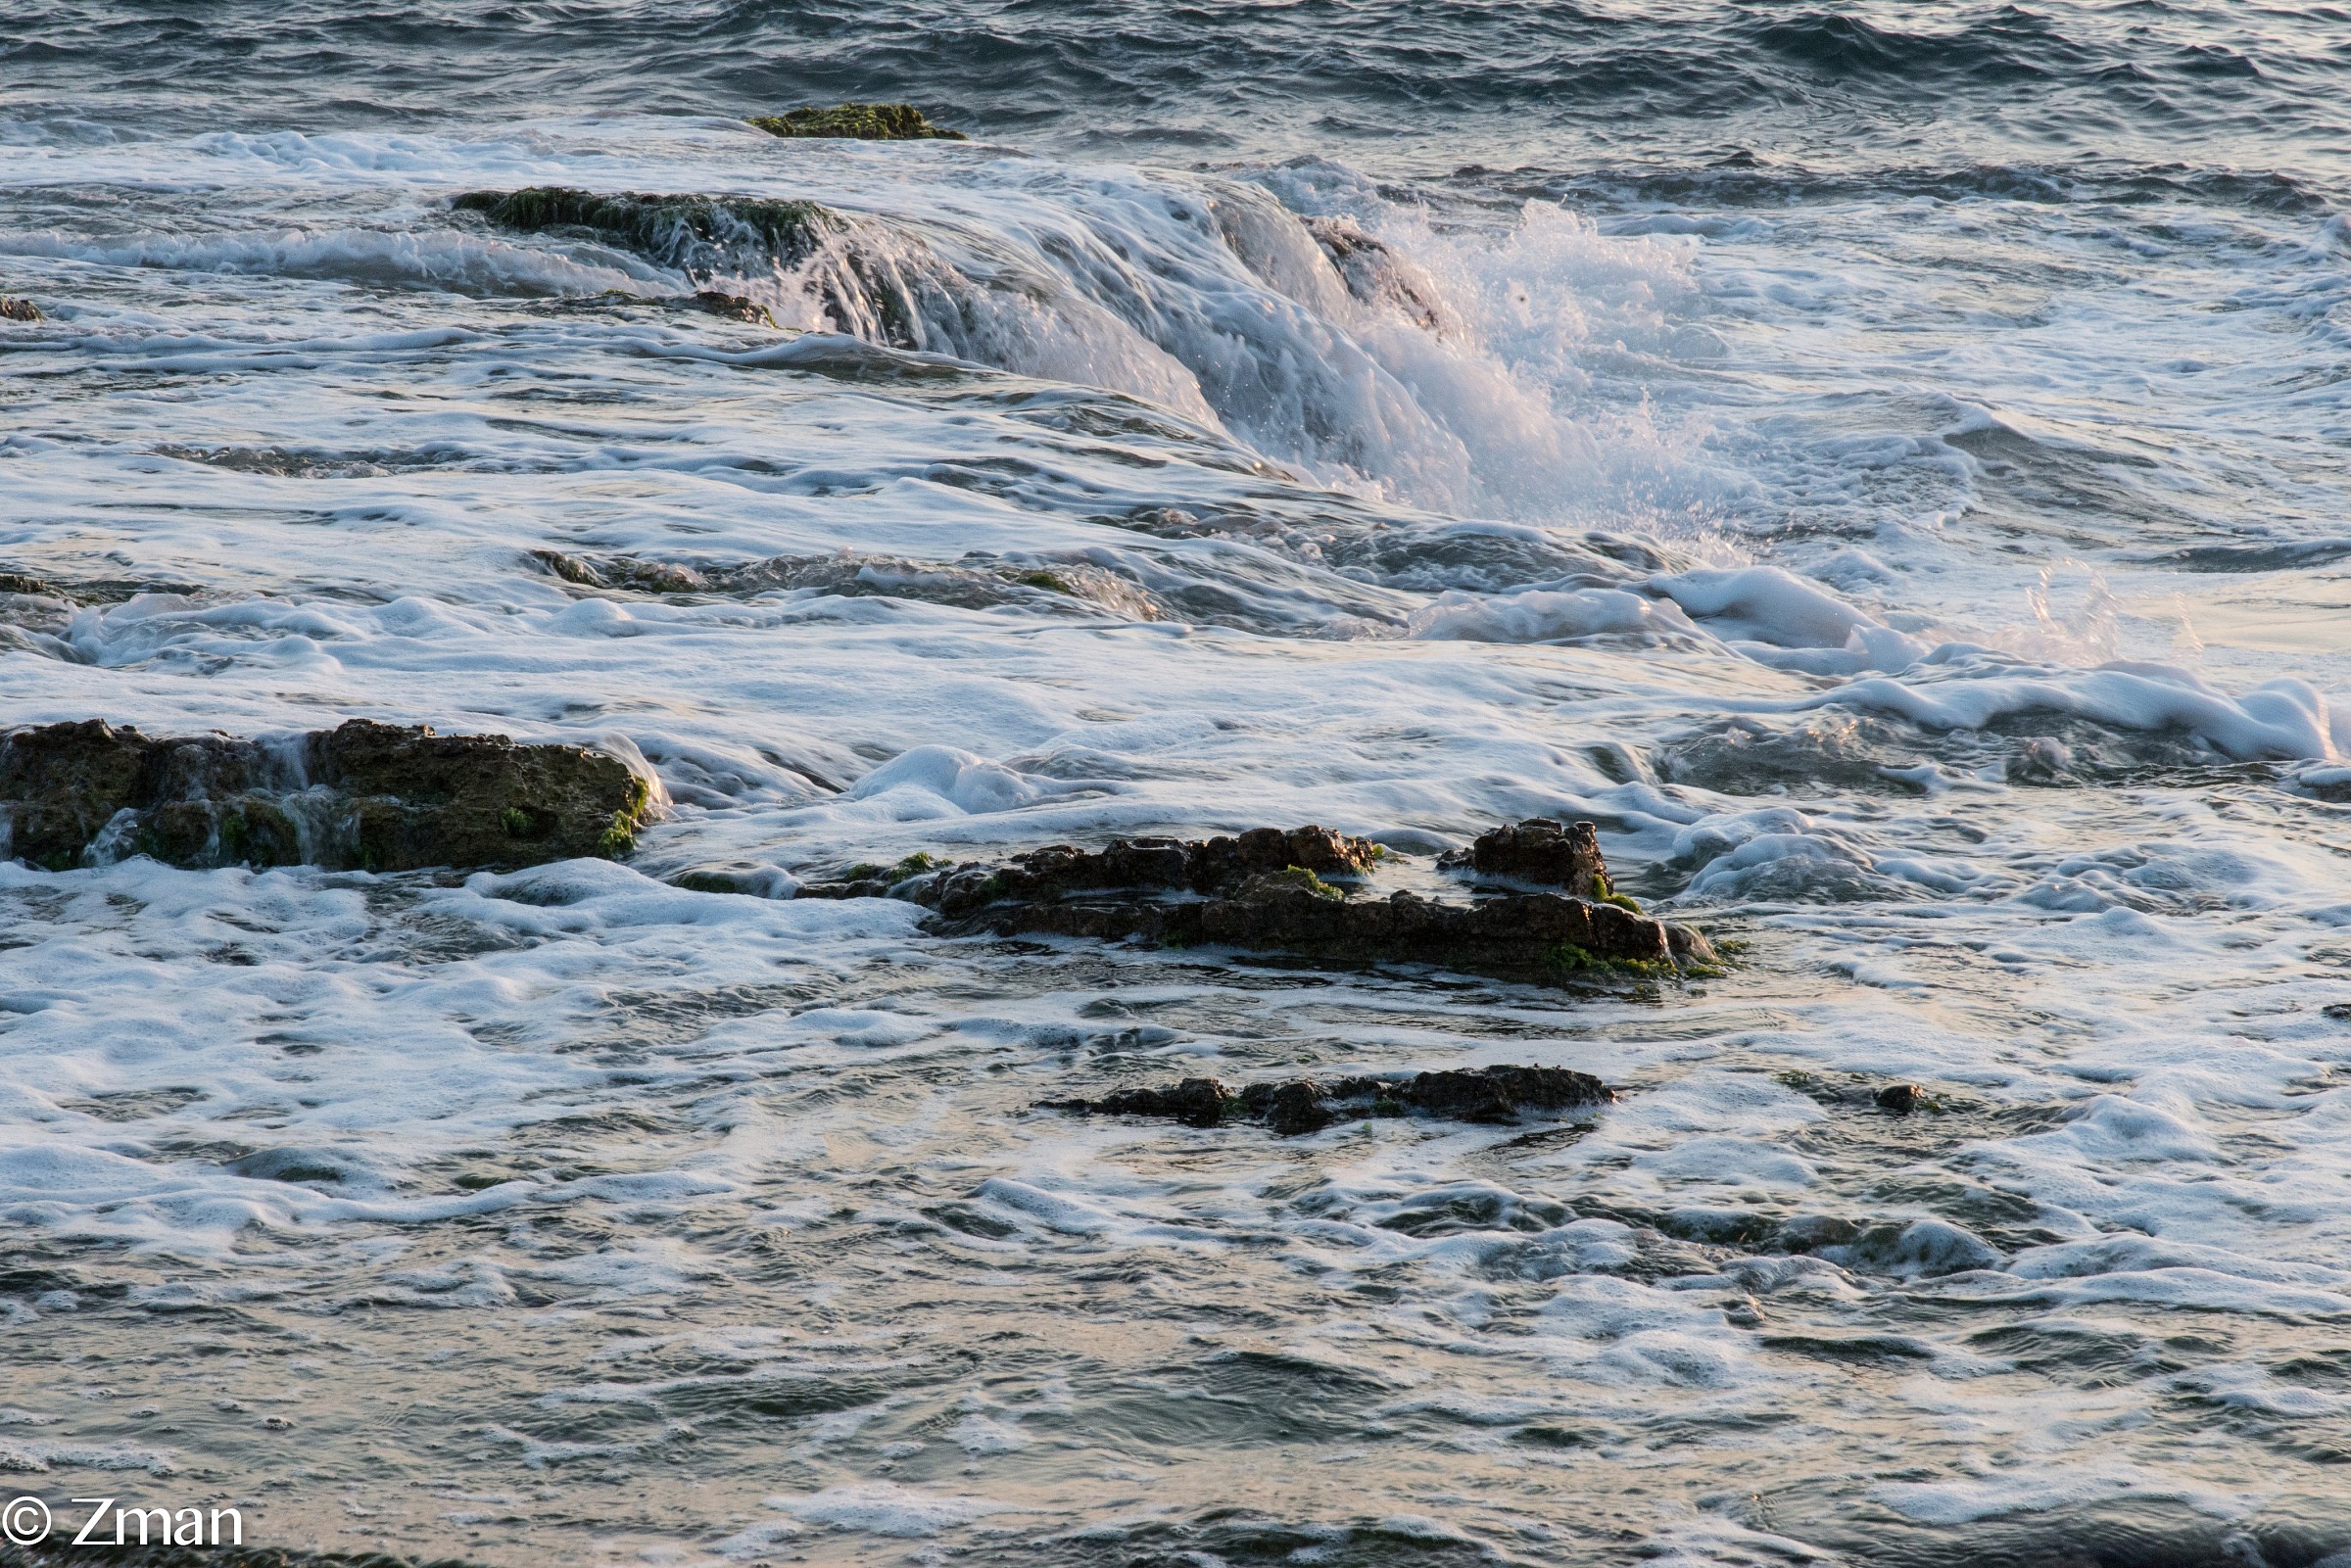 The Alrawshe shore line. Waves breaking on the Rocks...